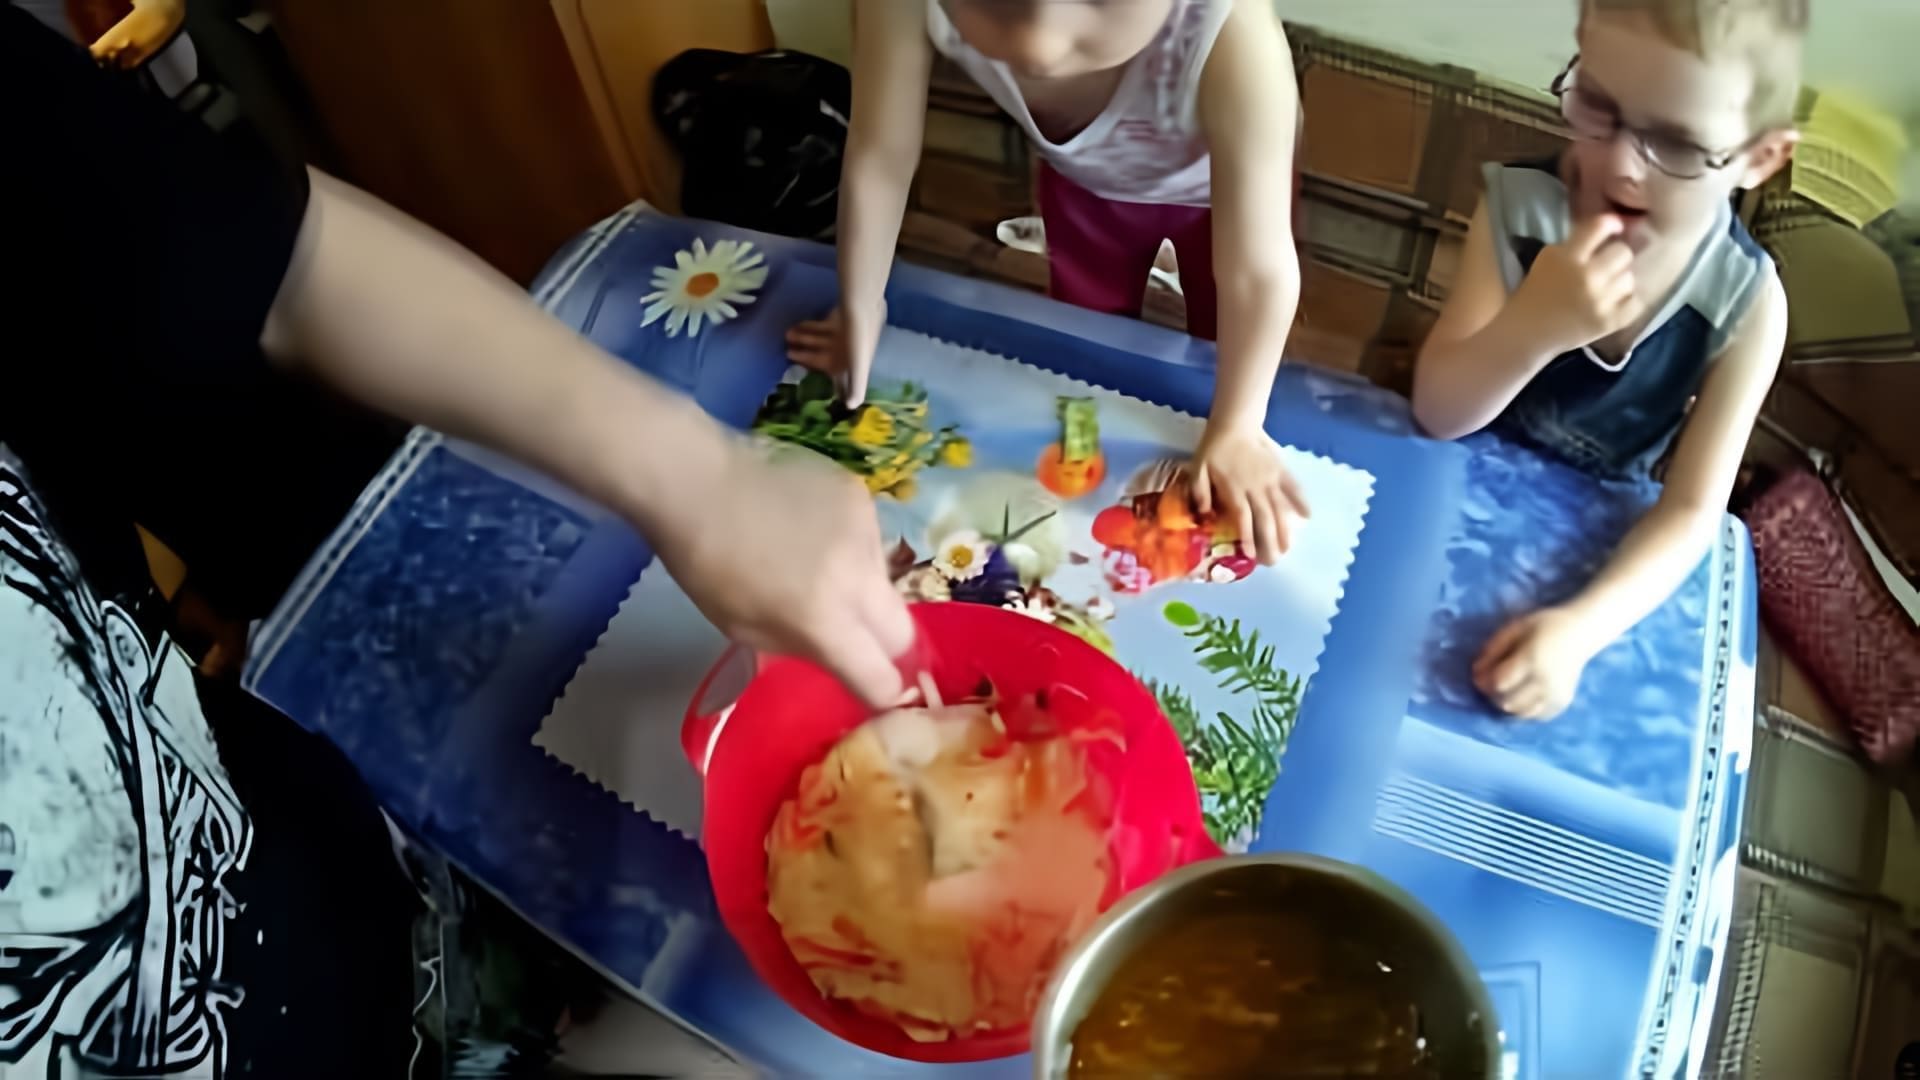 В этом видео демонстрируется процесс приготовления фунчозы - традиционного корейского блюда из стеклянной лапши